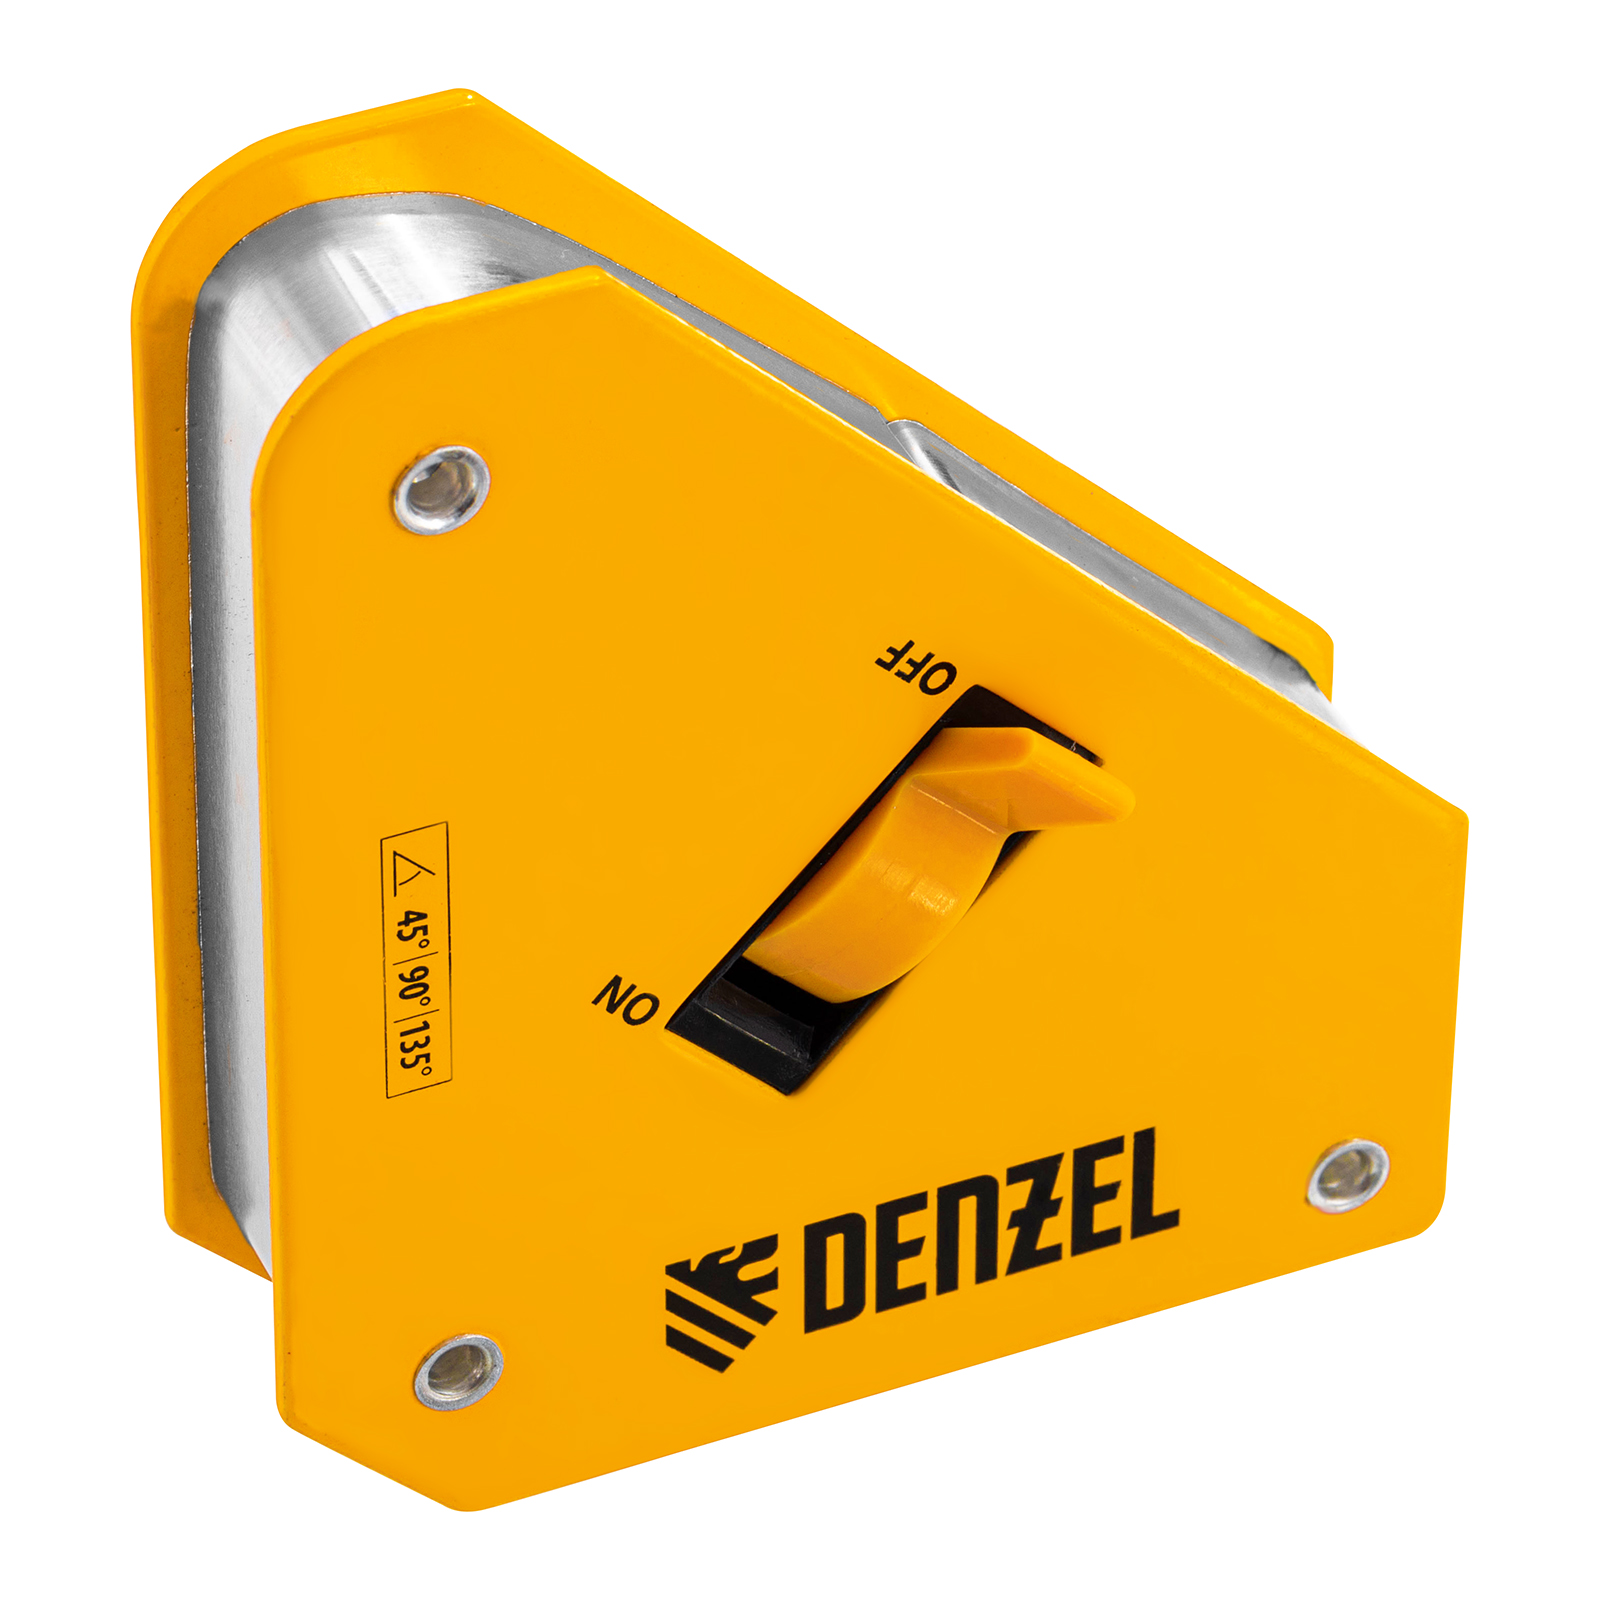 Фиксатор магнитный отключаемый для сварочных работ DENZEL усилие 30 LB, 45х90 град. 97561 магнитный угольник для сварочных работ hoegert technik